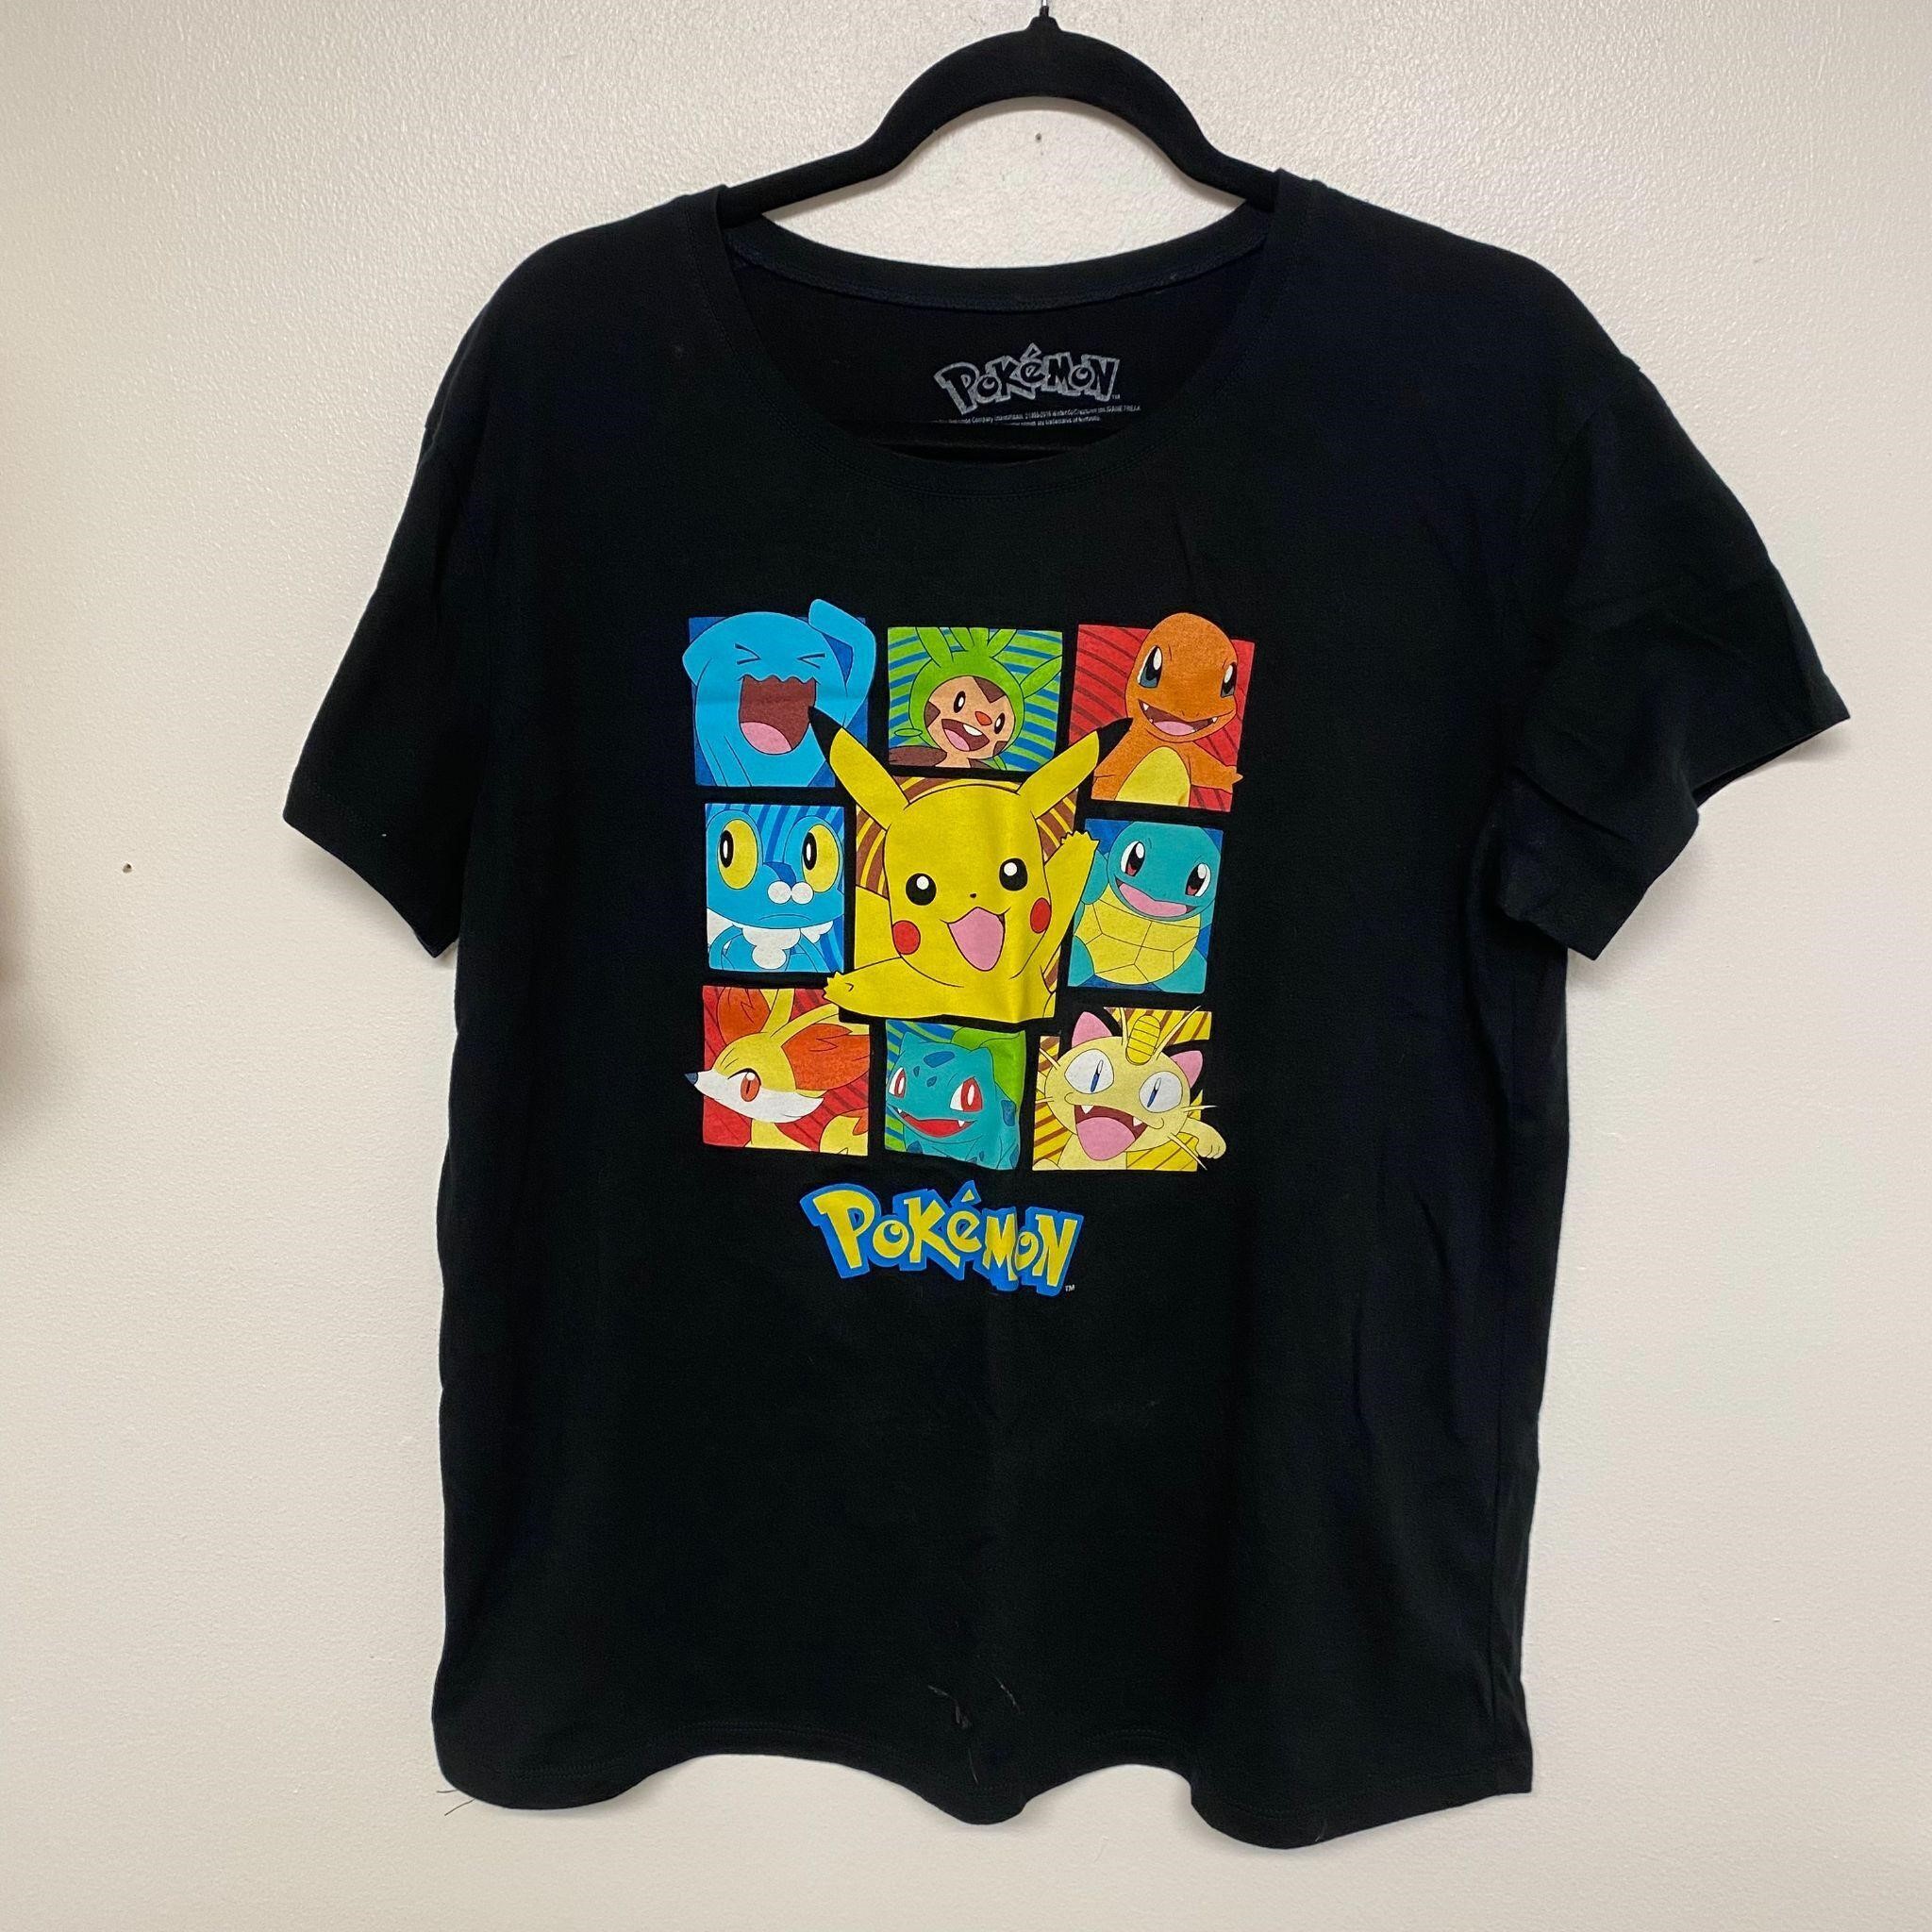 Pokemon Pikachu Black T-Shirt Size 2XL (19)